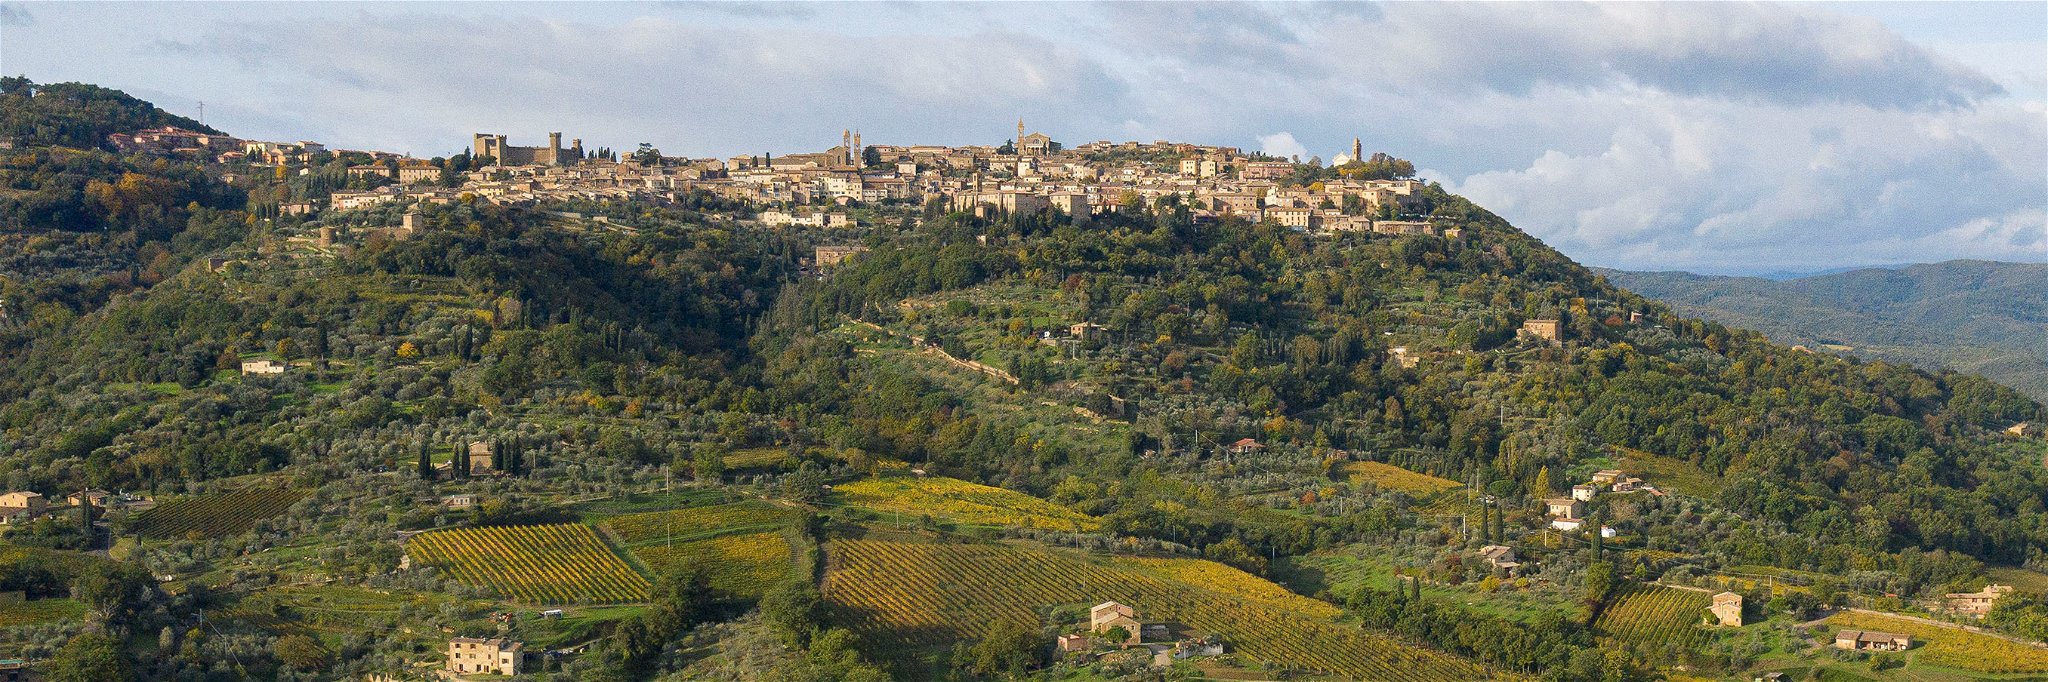 Herrliche Weinlagen in der Toskana